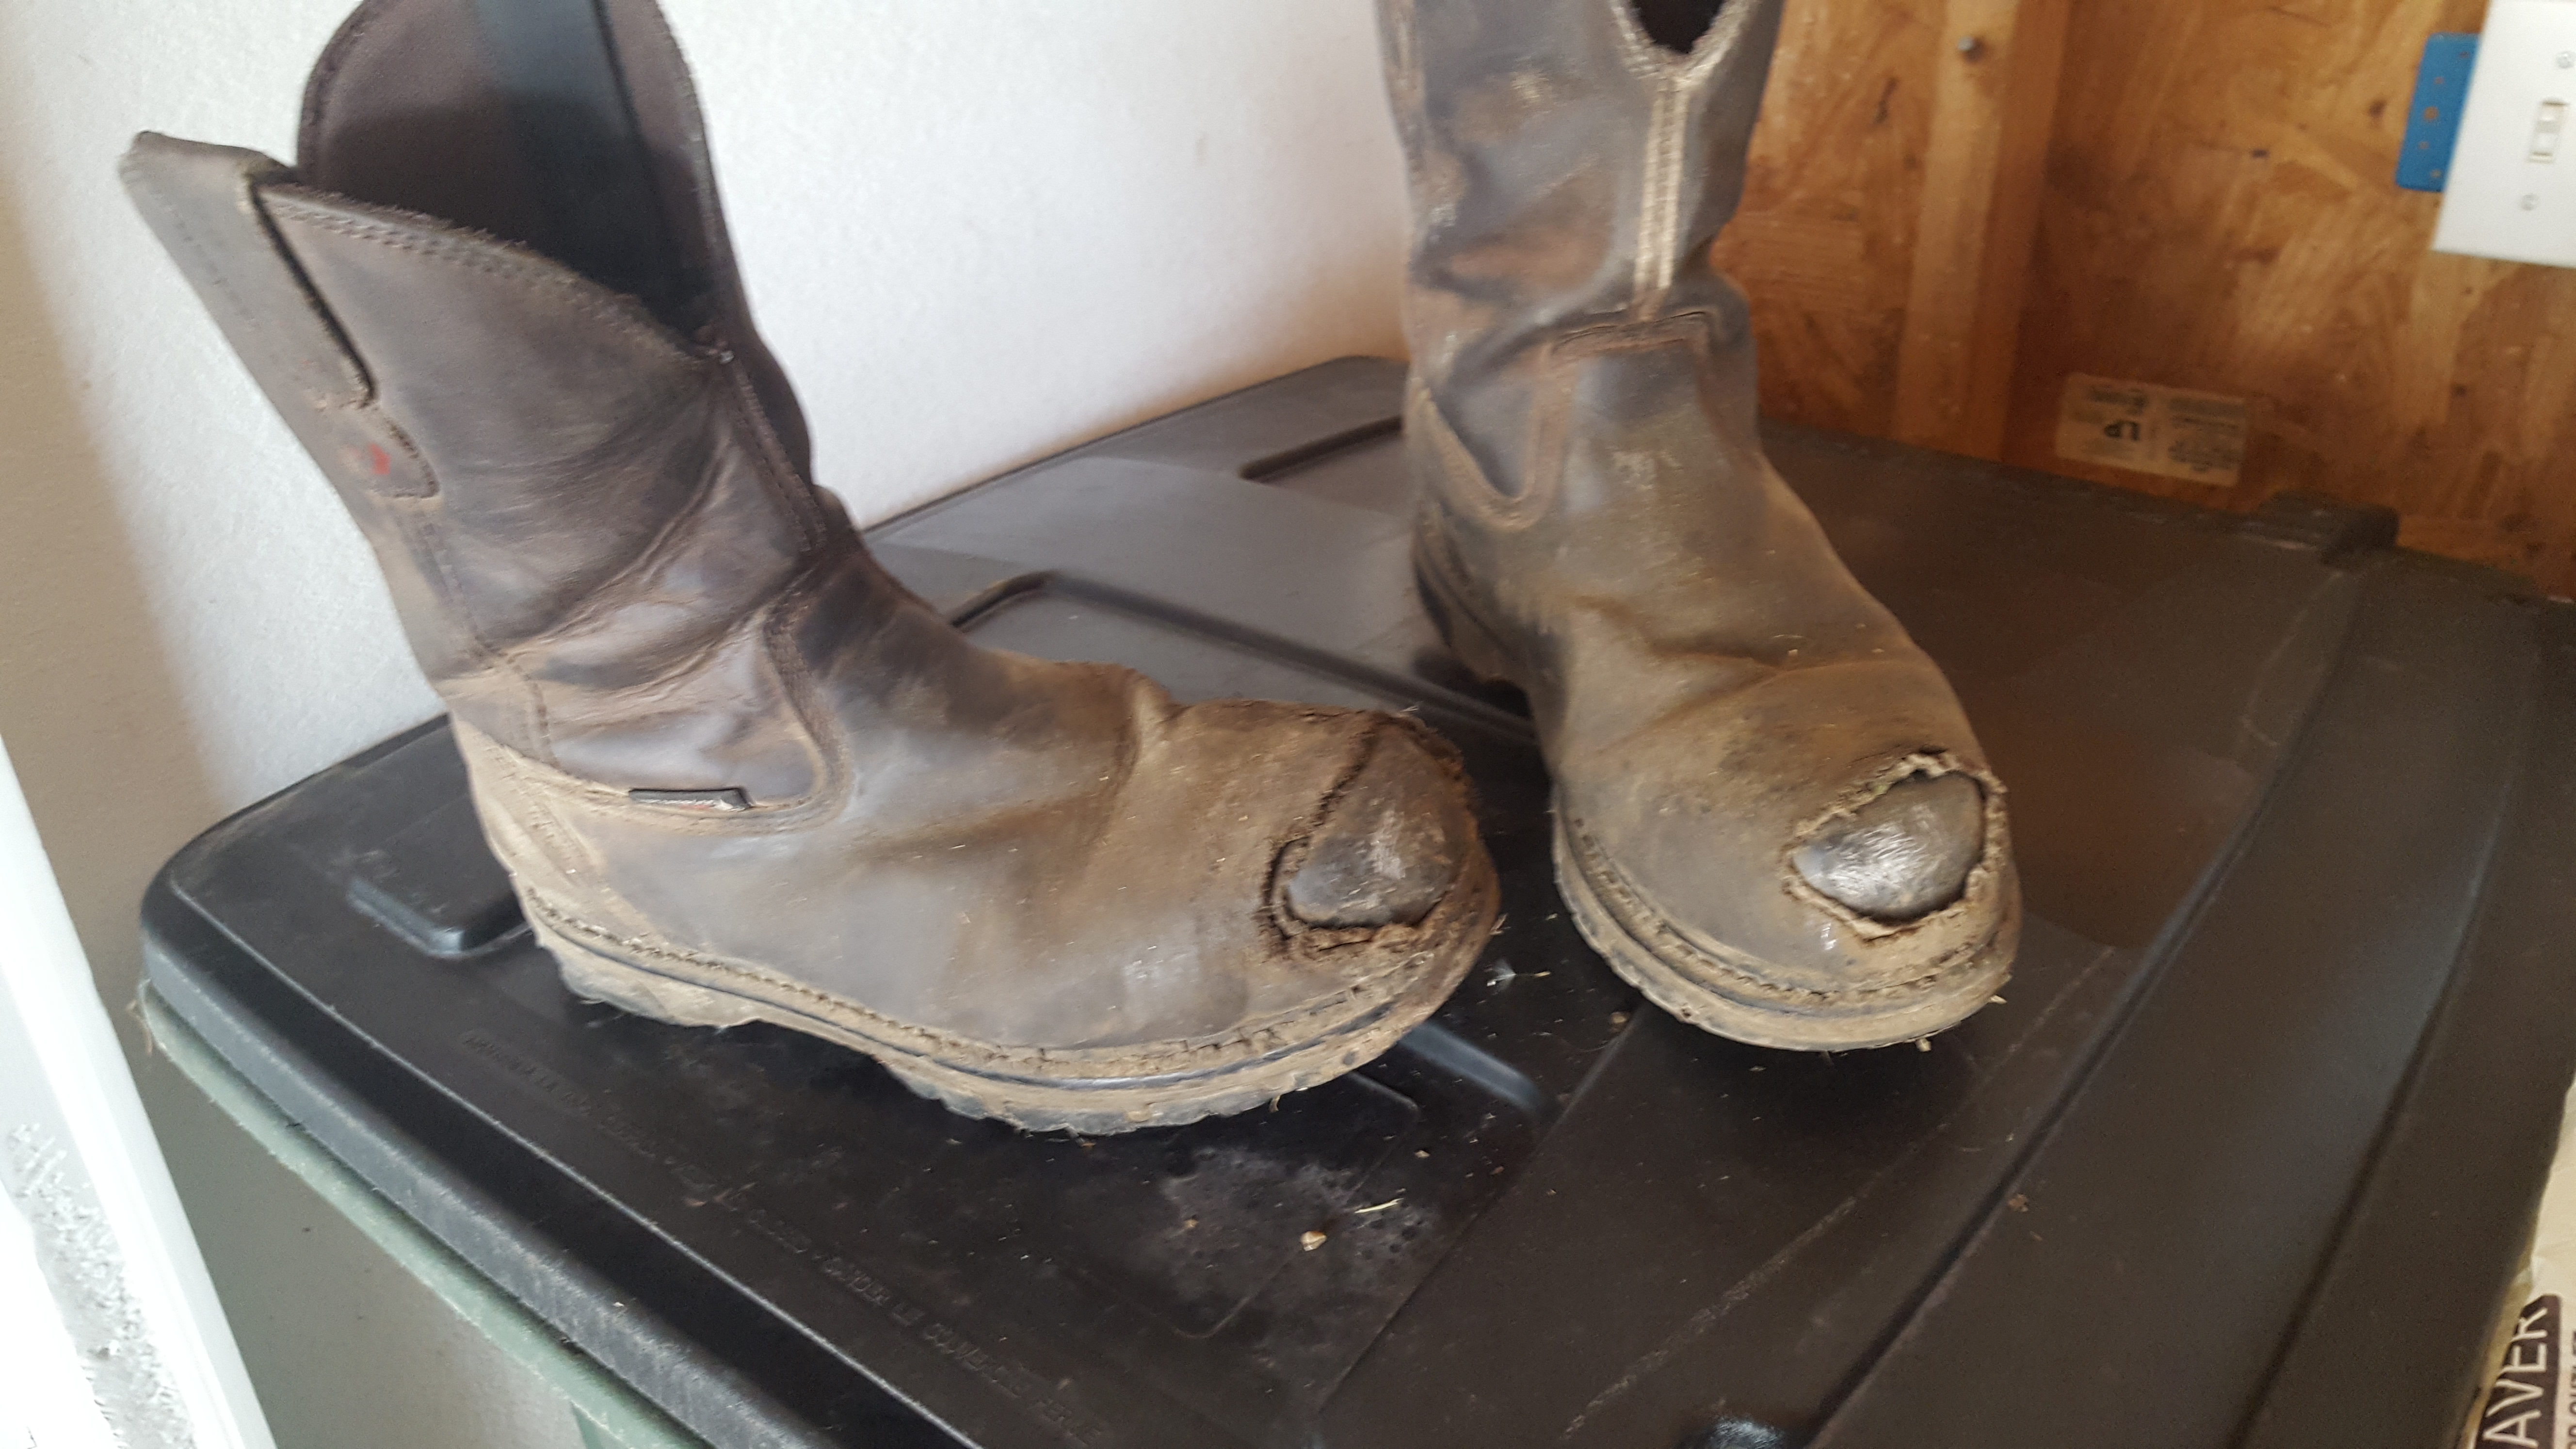 wolverine nation durashocks carbonmax boots